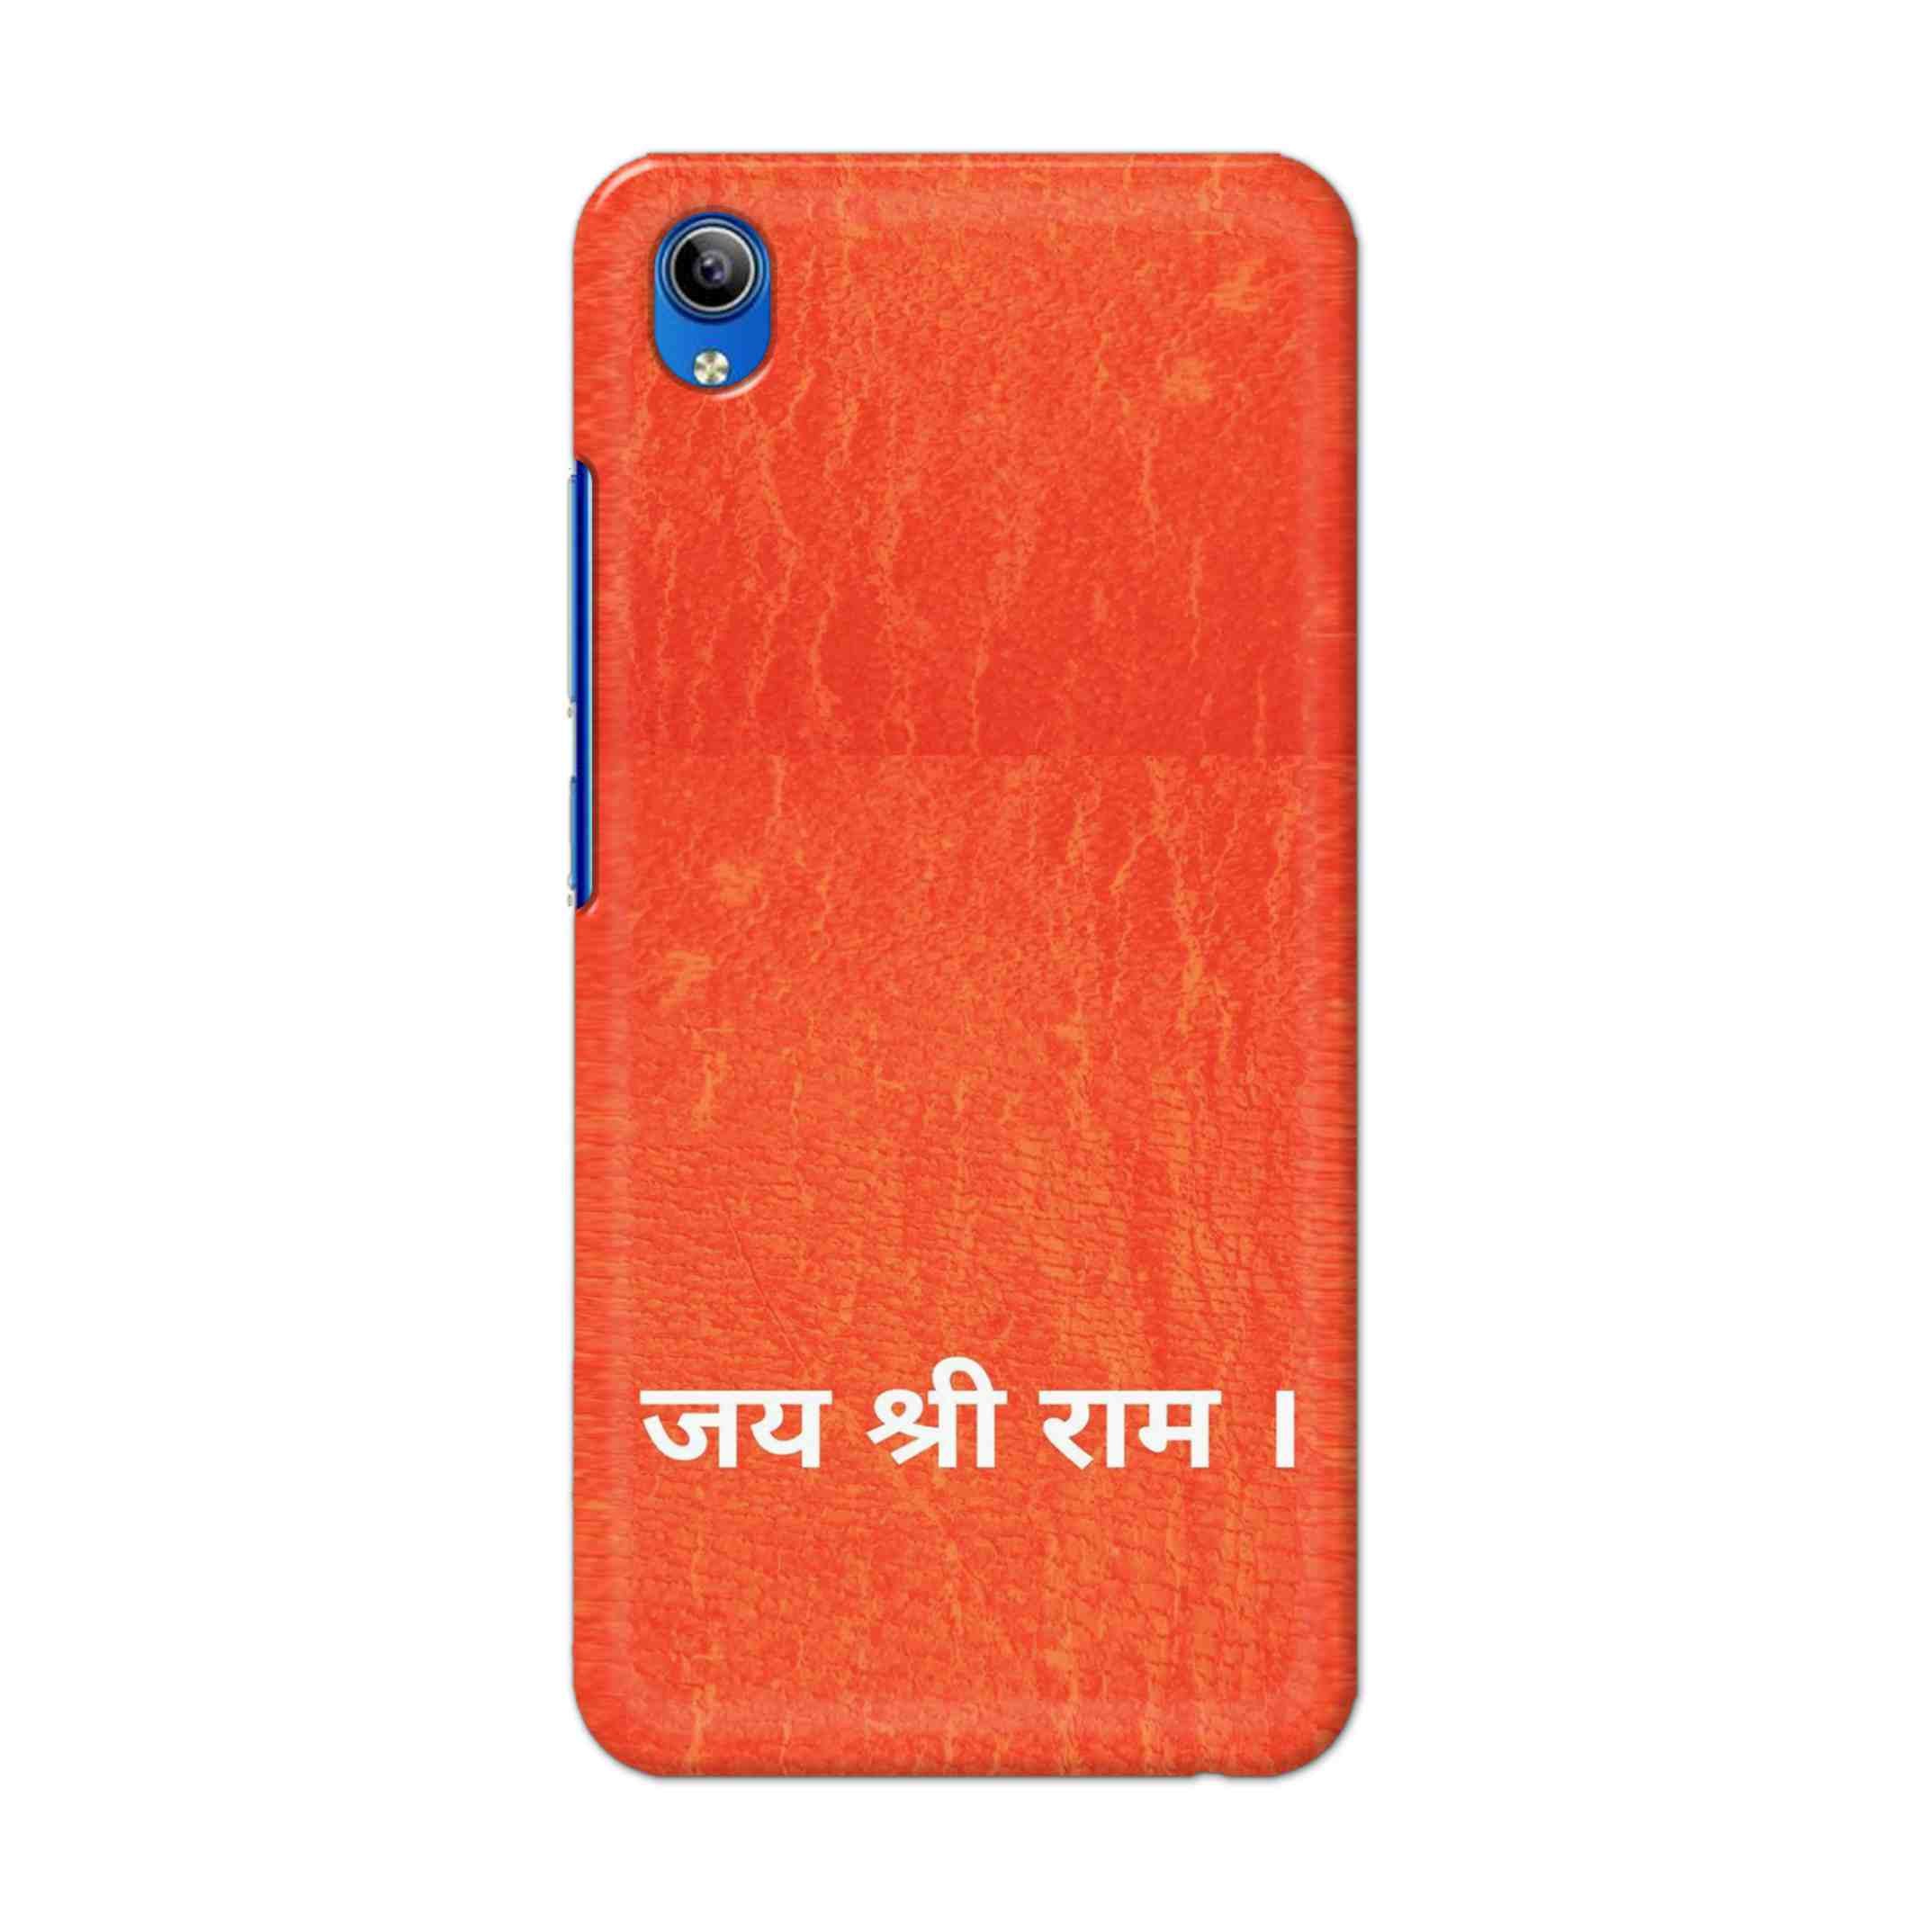 Buy Jai Shree Ram Hard Back Mobile Phone Case Cover For Vivo Y91i Online